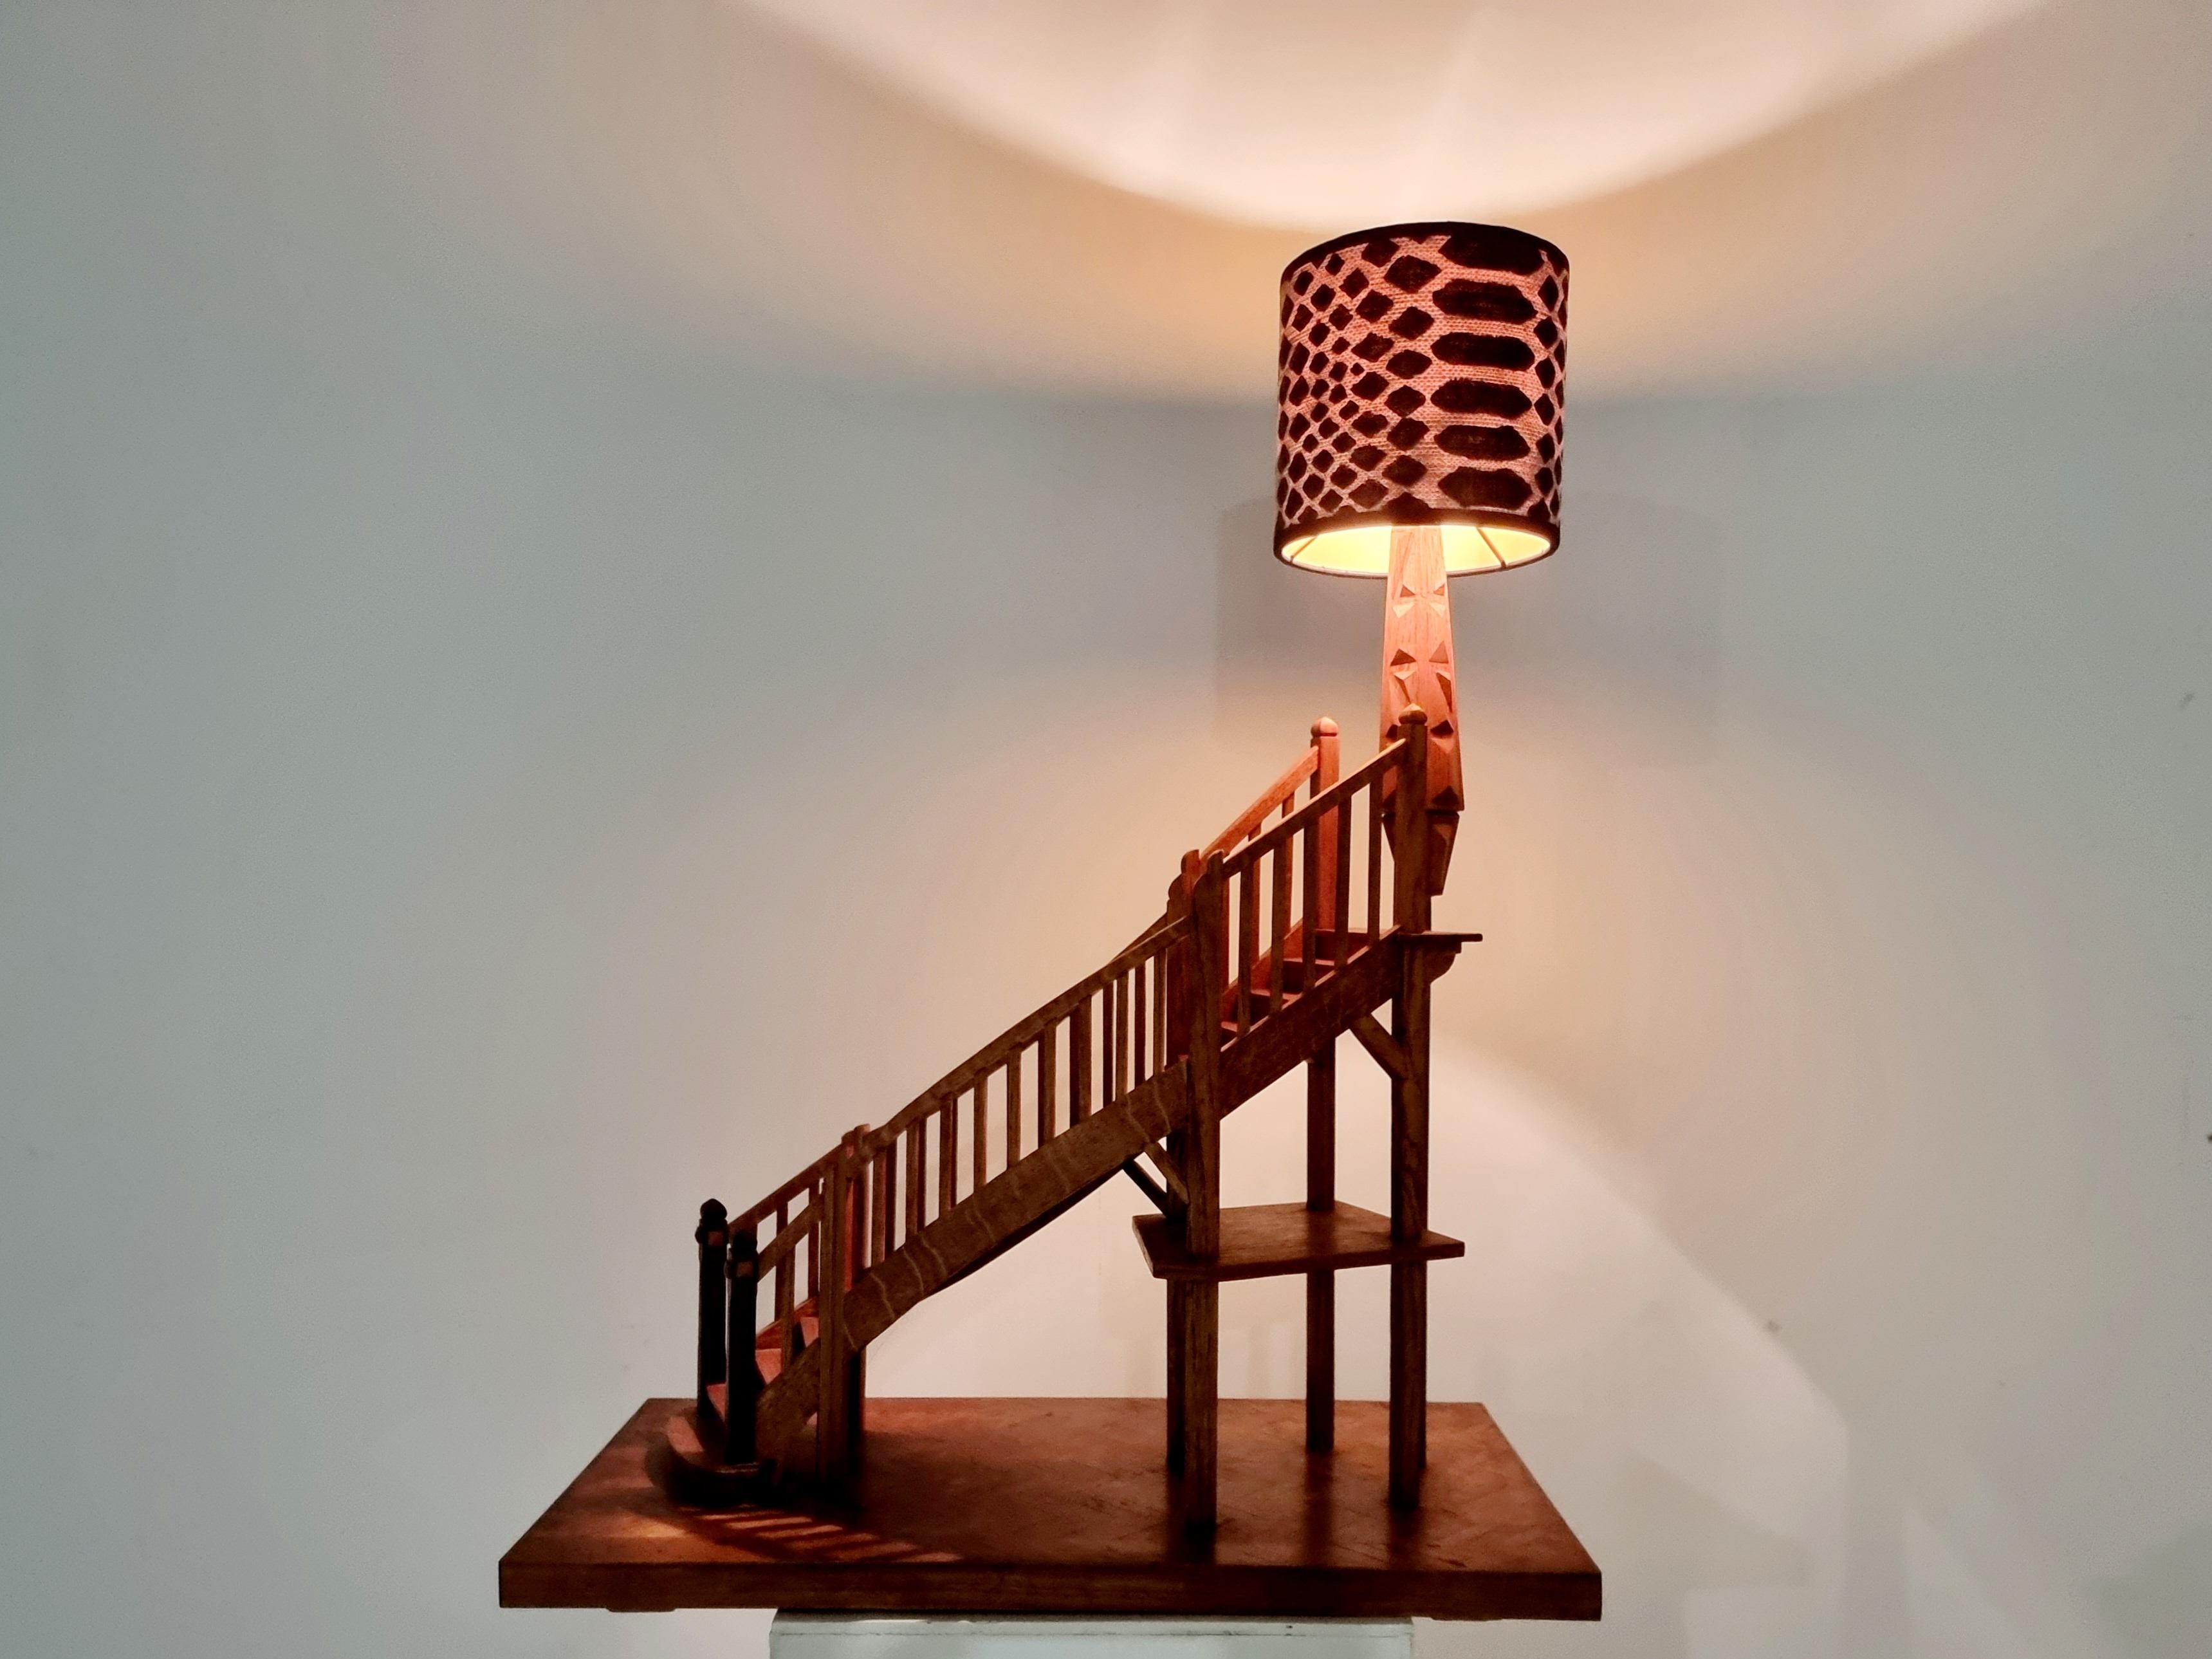 Antikes Treppenhausdekor aus Nussbaumholz aus Frankreich, um 1930. Mit ihrem klassischen Design mit zahlreichen Stufen, die auf einem quadratischen Sockel im Fischgrätenmuster ruhen, ist diese spezielle Treppe für die Verwendung als Lampe gedacht.